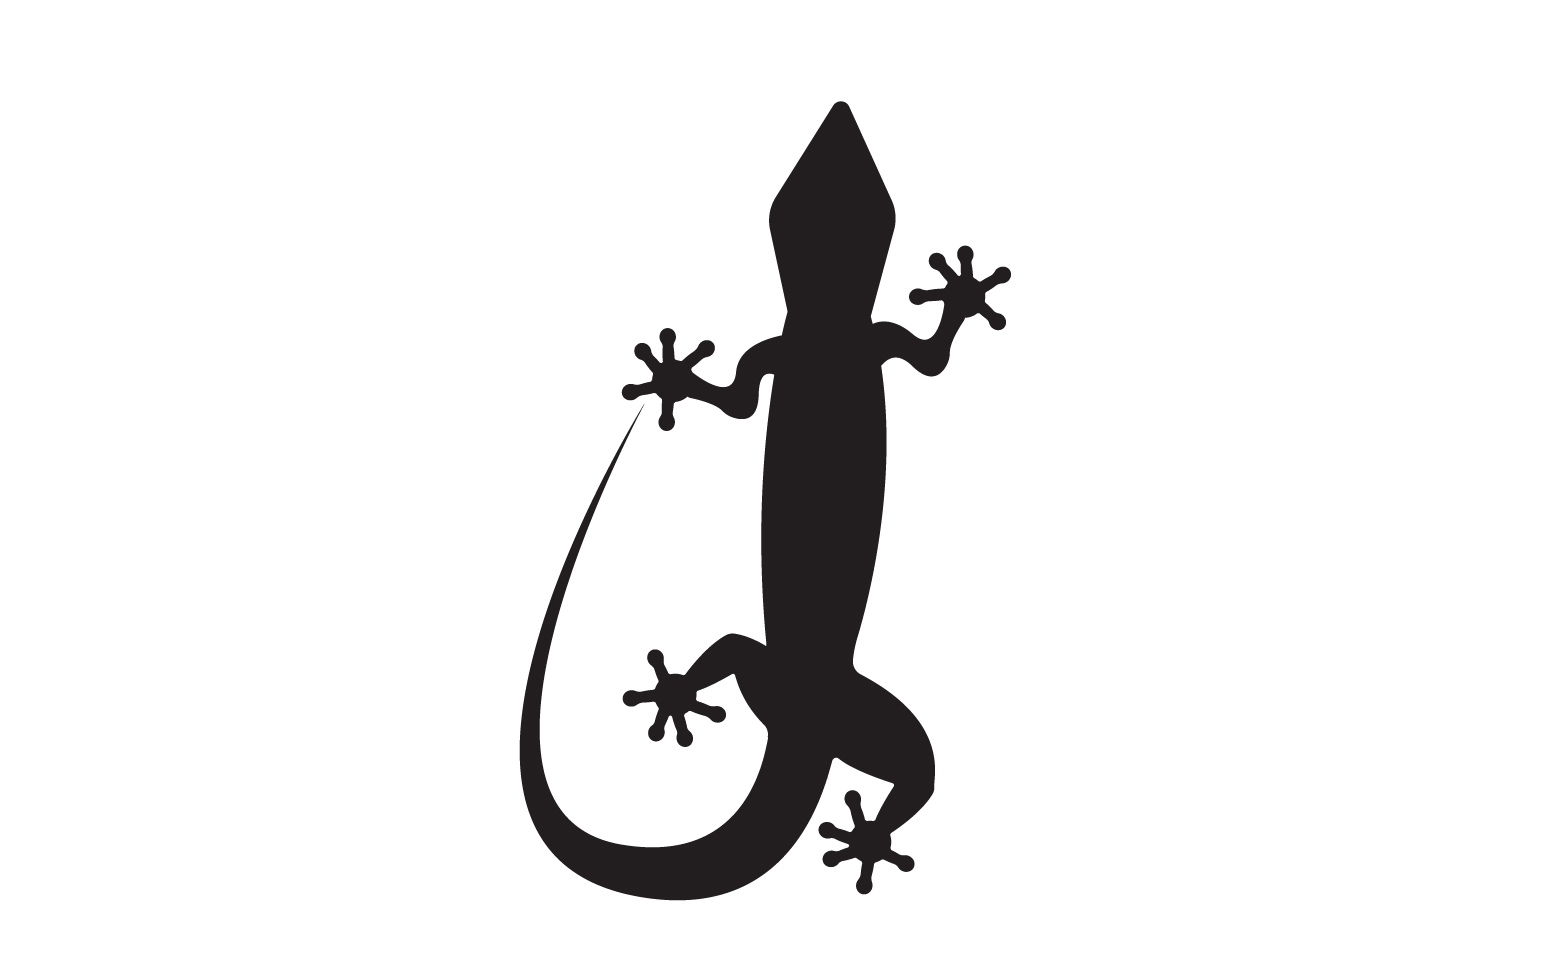 Lizard chameleon home lizard logo v10